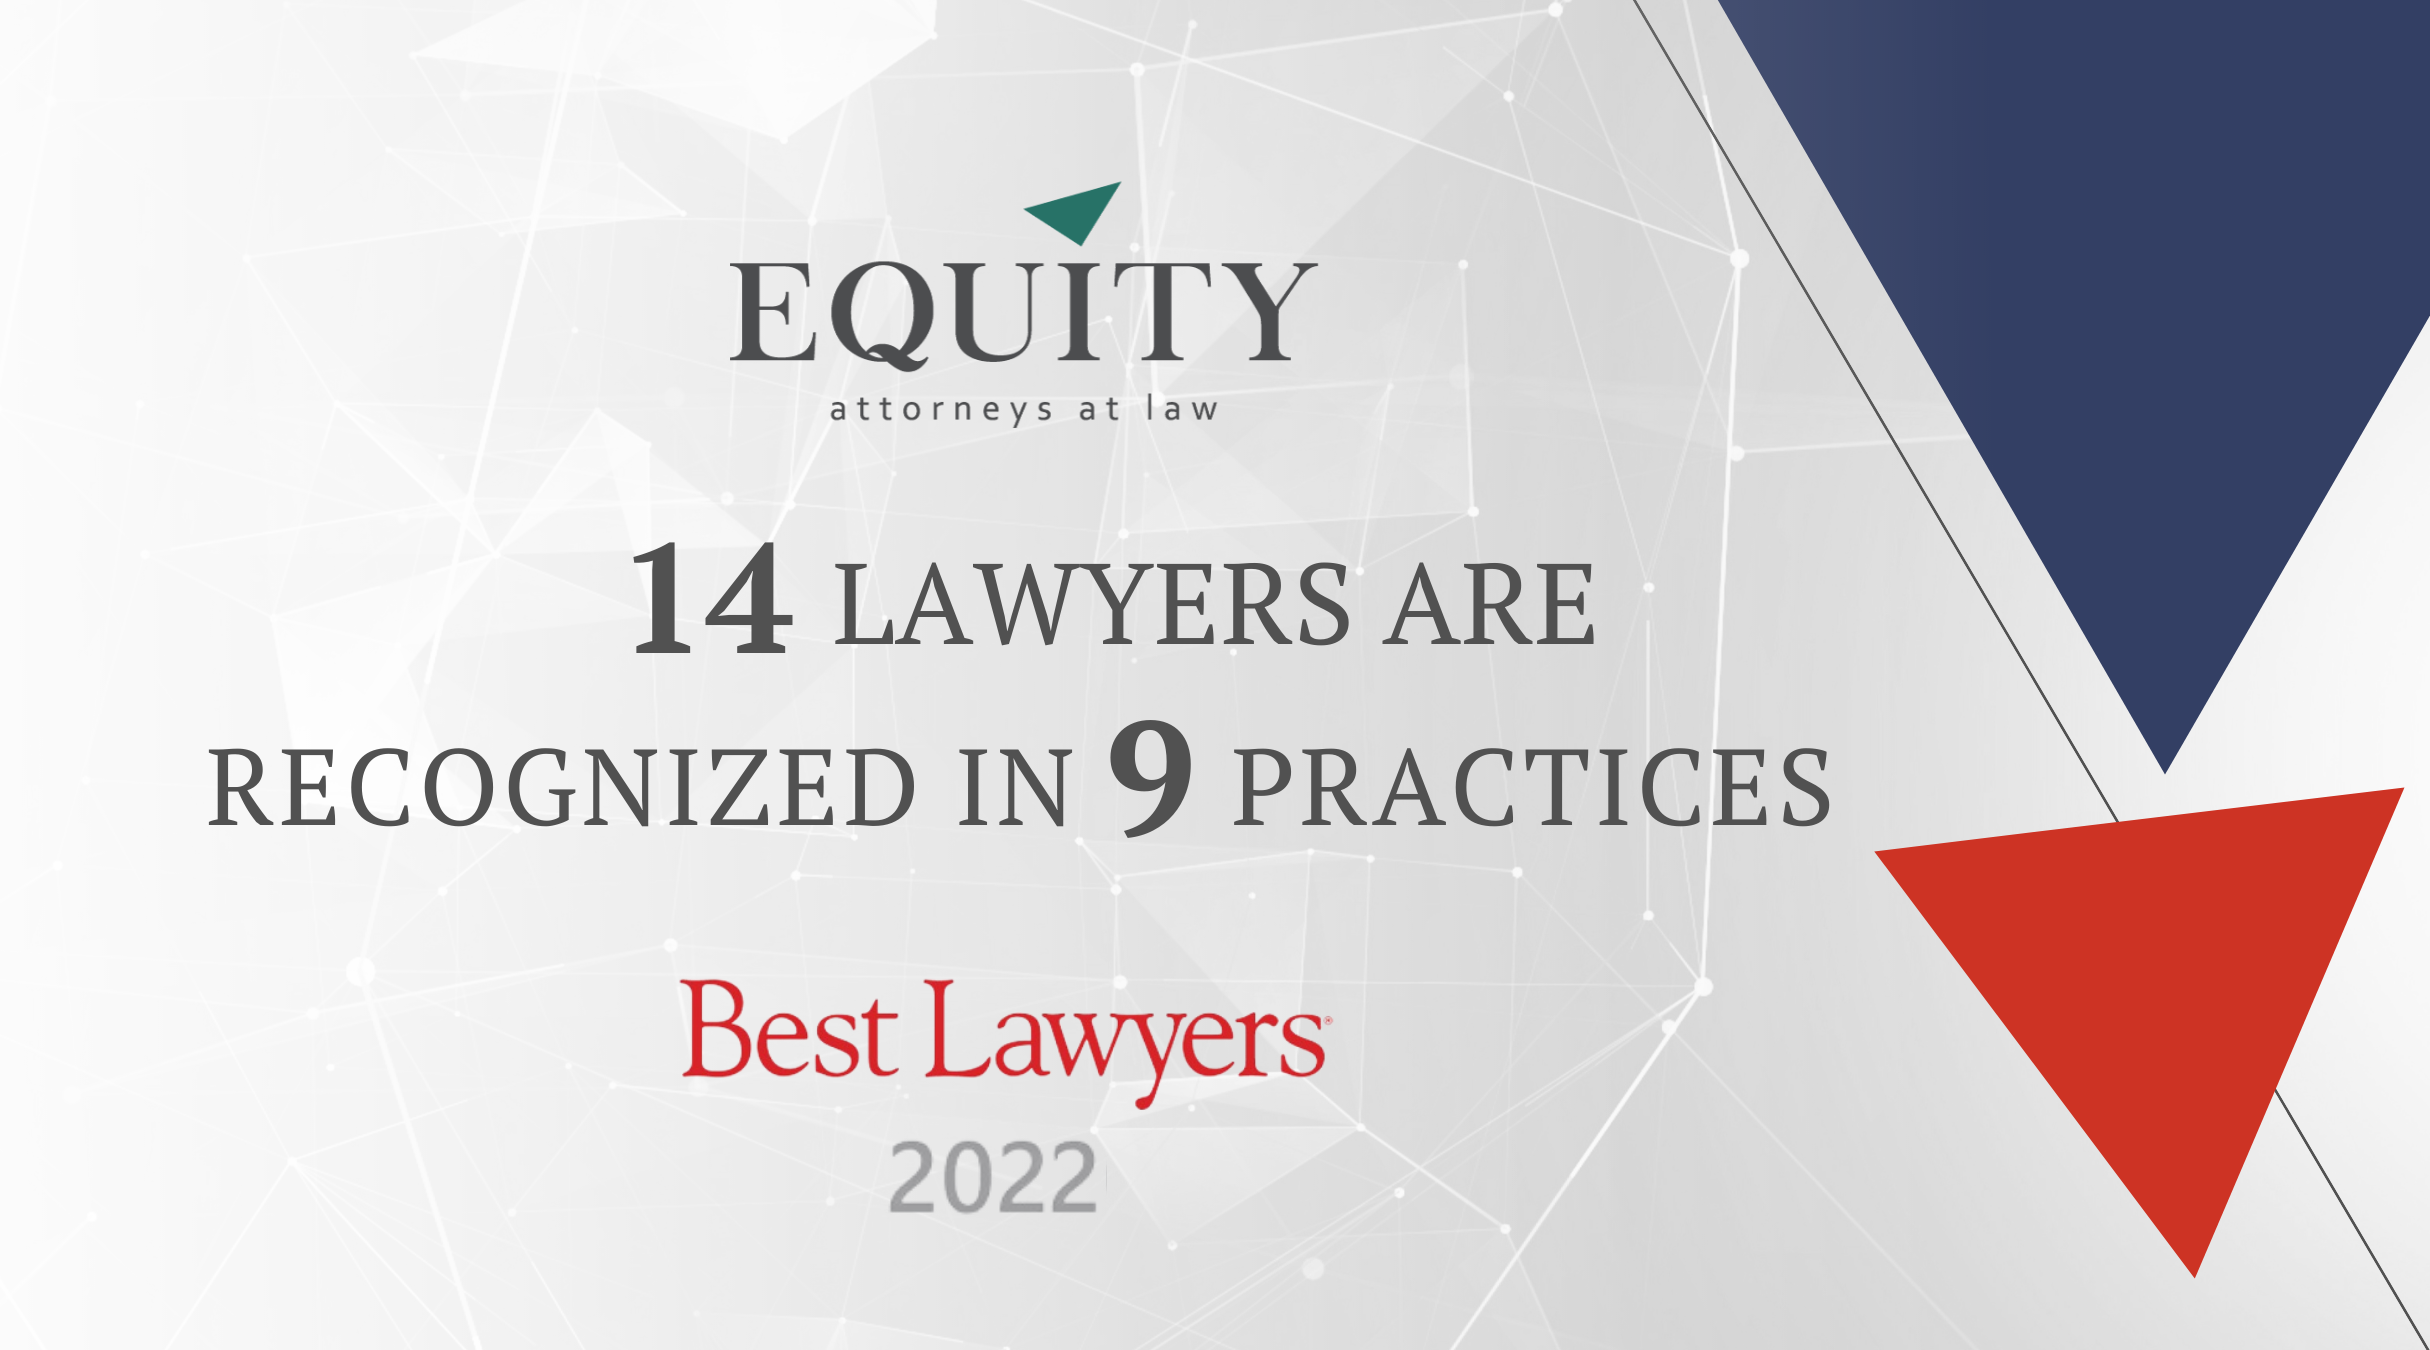 Оприлюднено результати міжнародного дослідження Best Lawyers 2022!